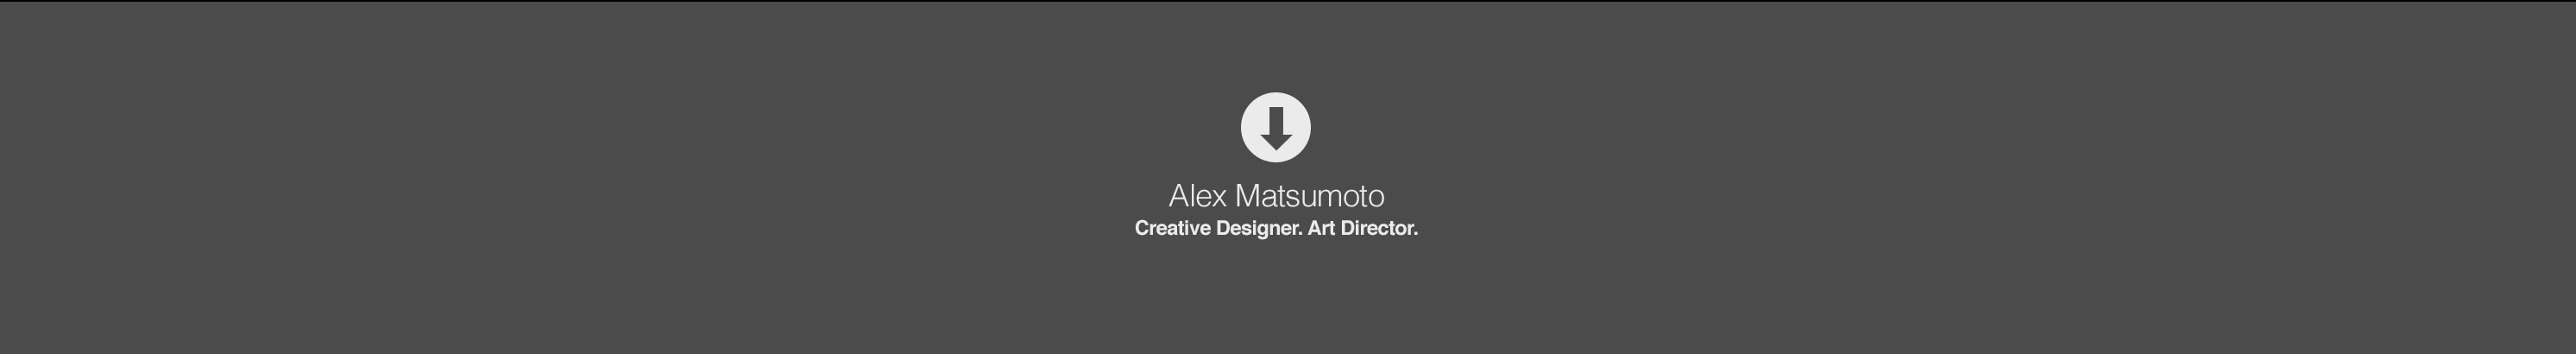 Alex Matsumoto profil başlığı